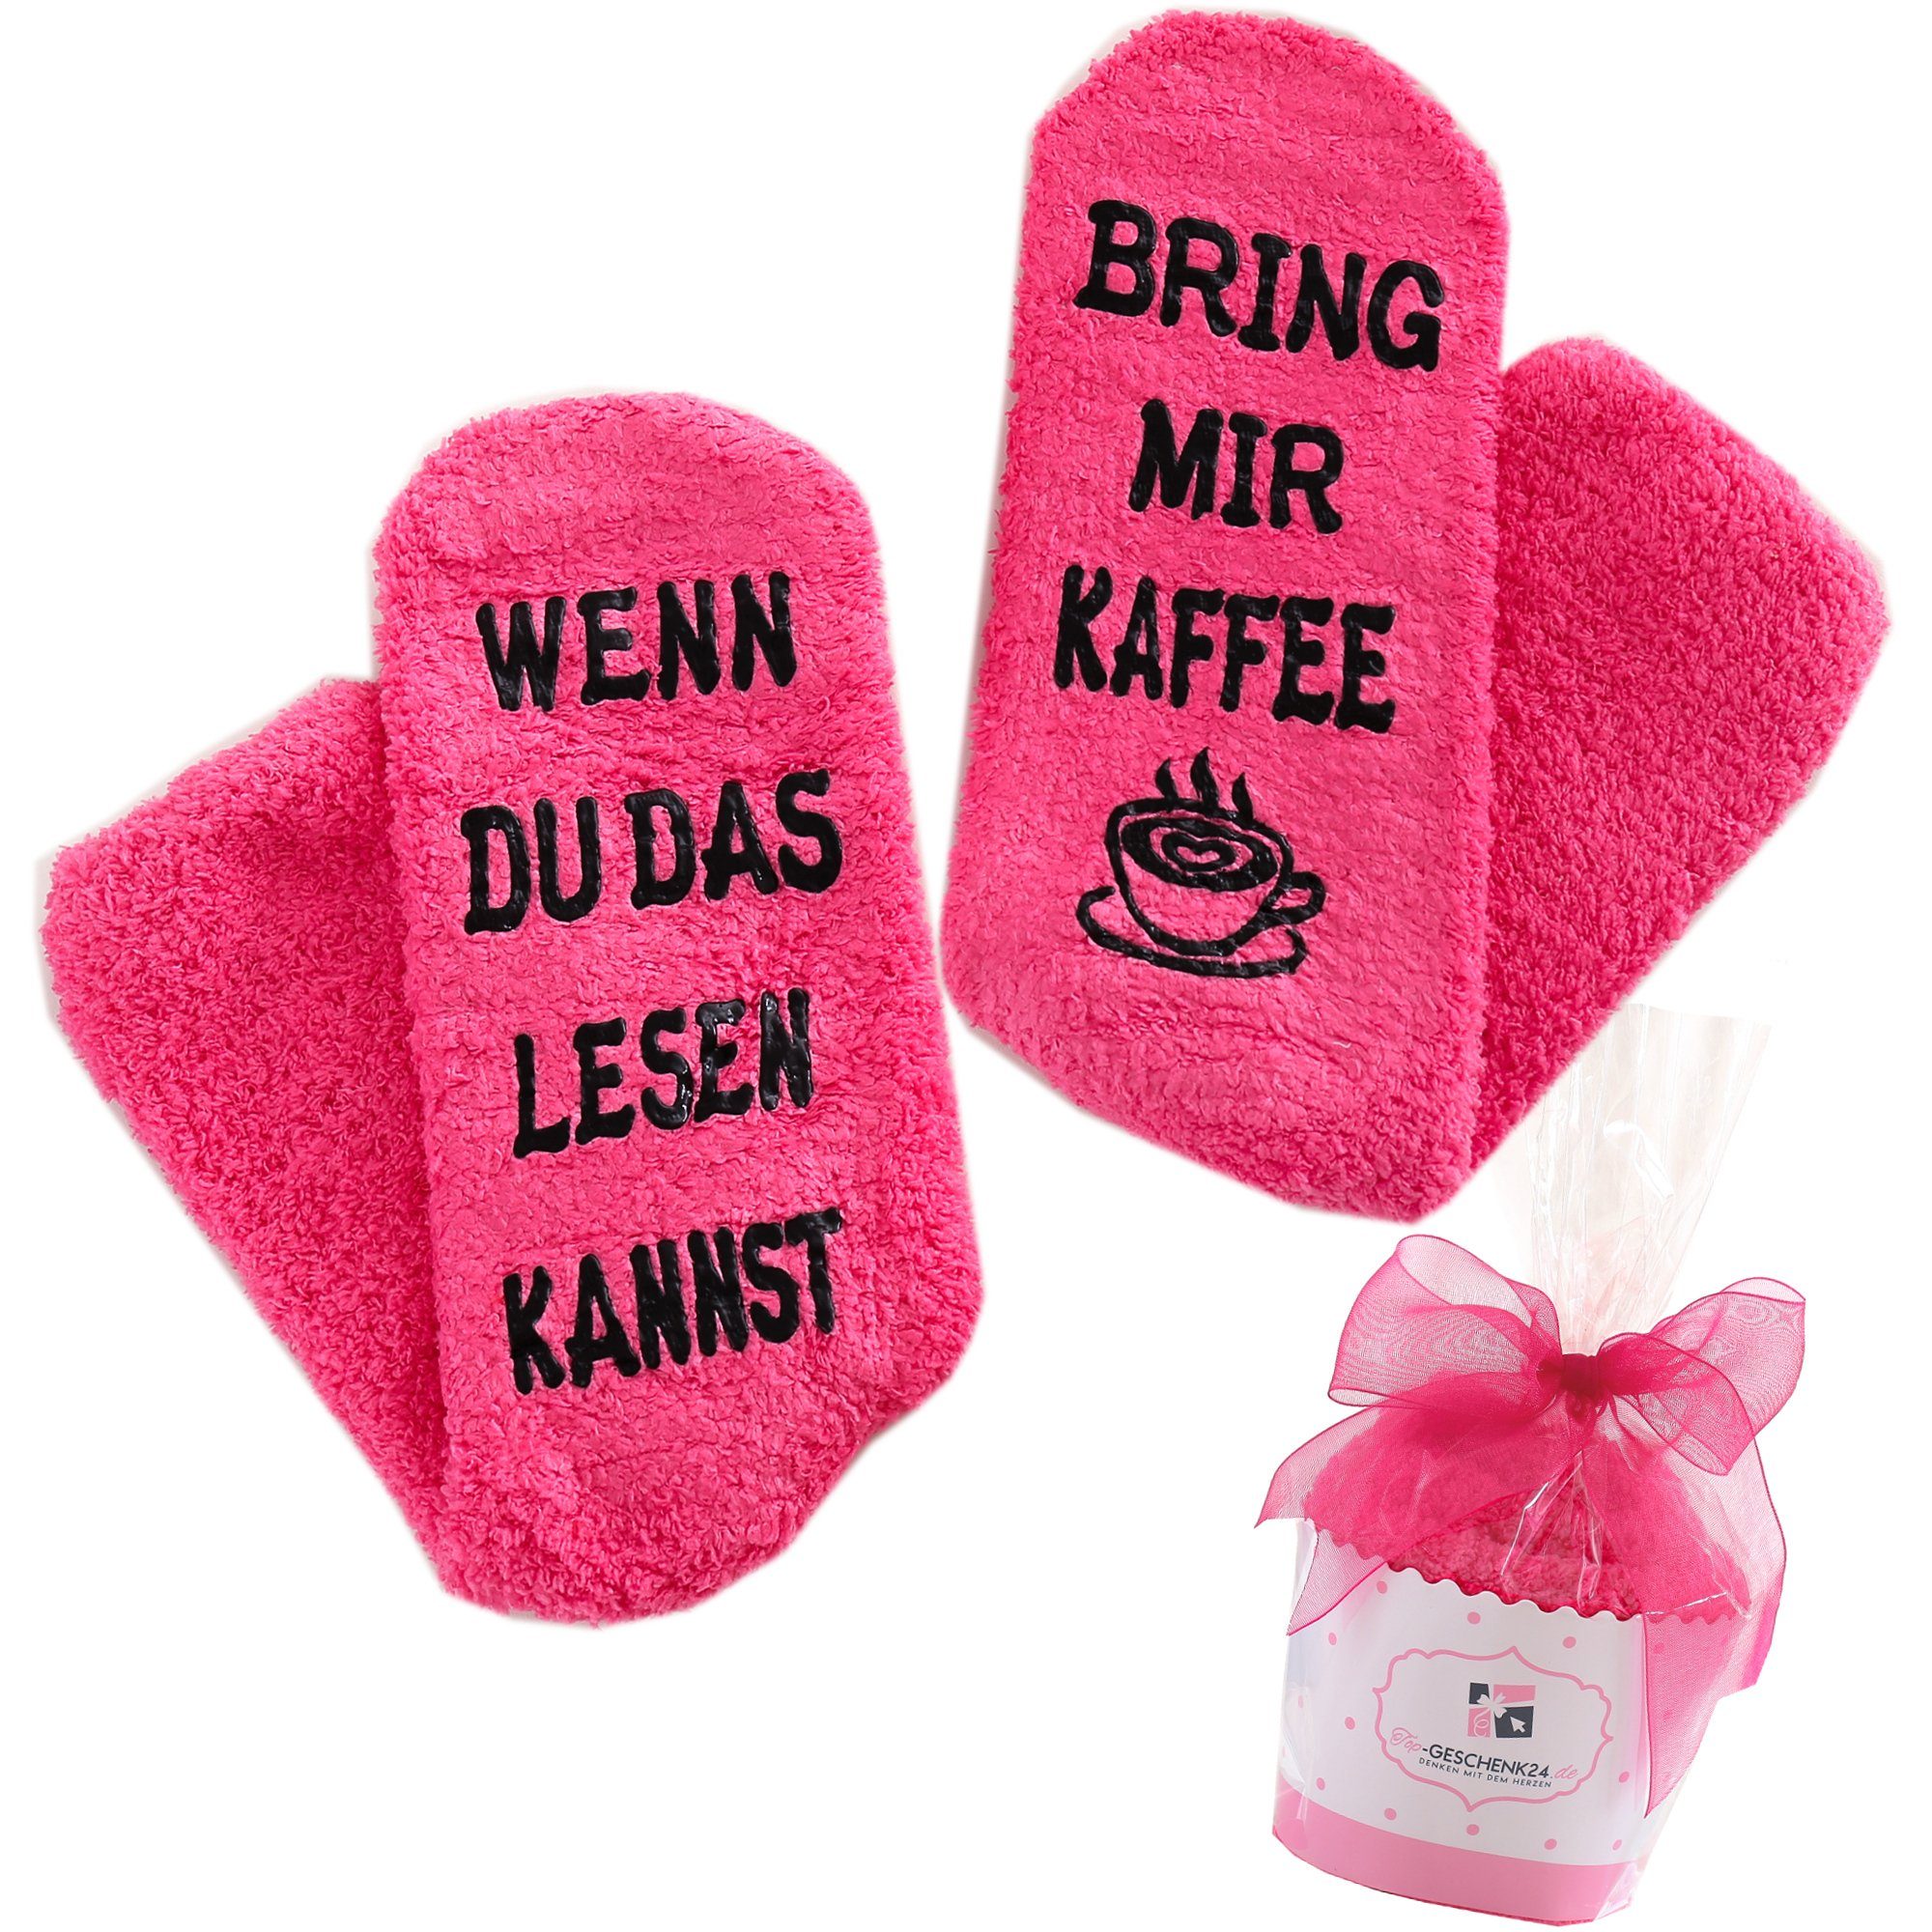 Lucadeau Kuschelsocken mit Spruch "Wenn du das lesen kannst, bring mir Kaffee" (Cupcake Verpackung, 1 Paar) rutschfest, Gr. 36-43, Weihnachtsgeschenke rosa